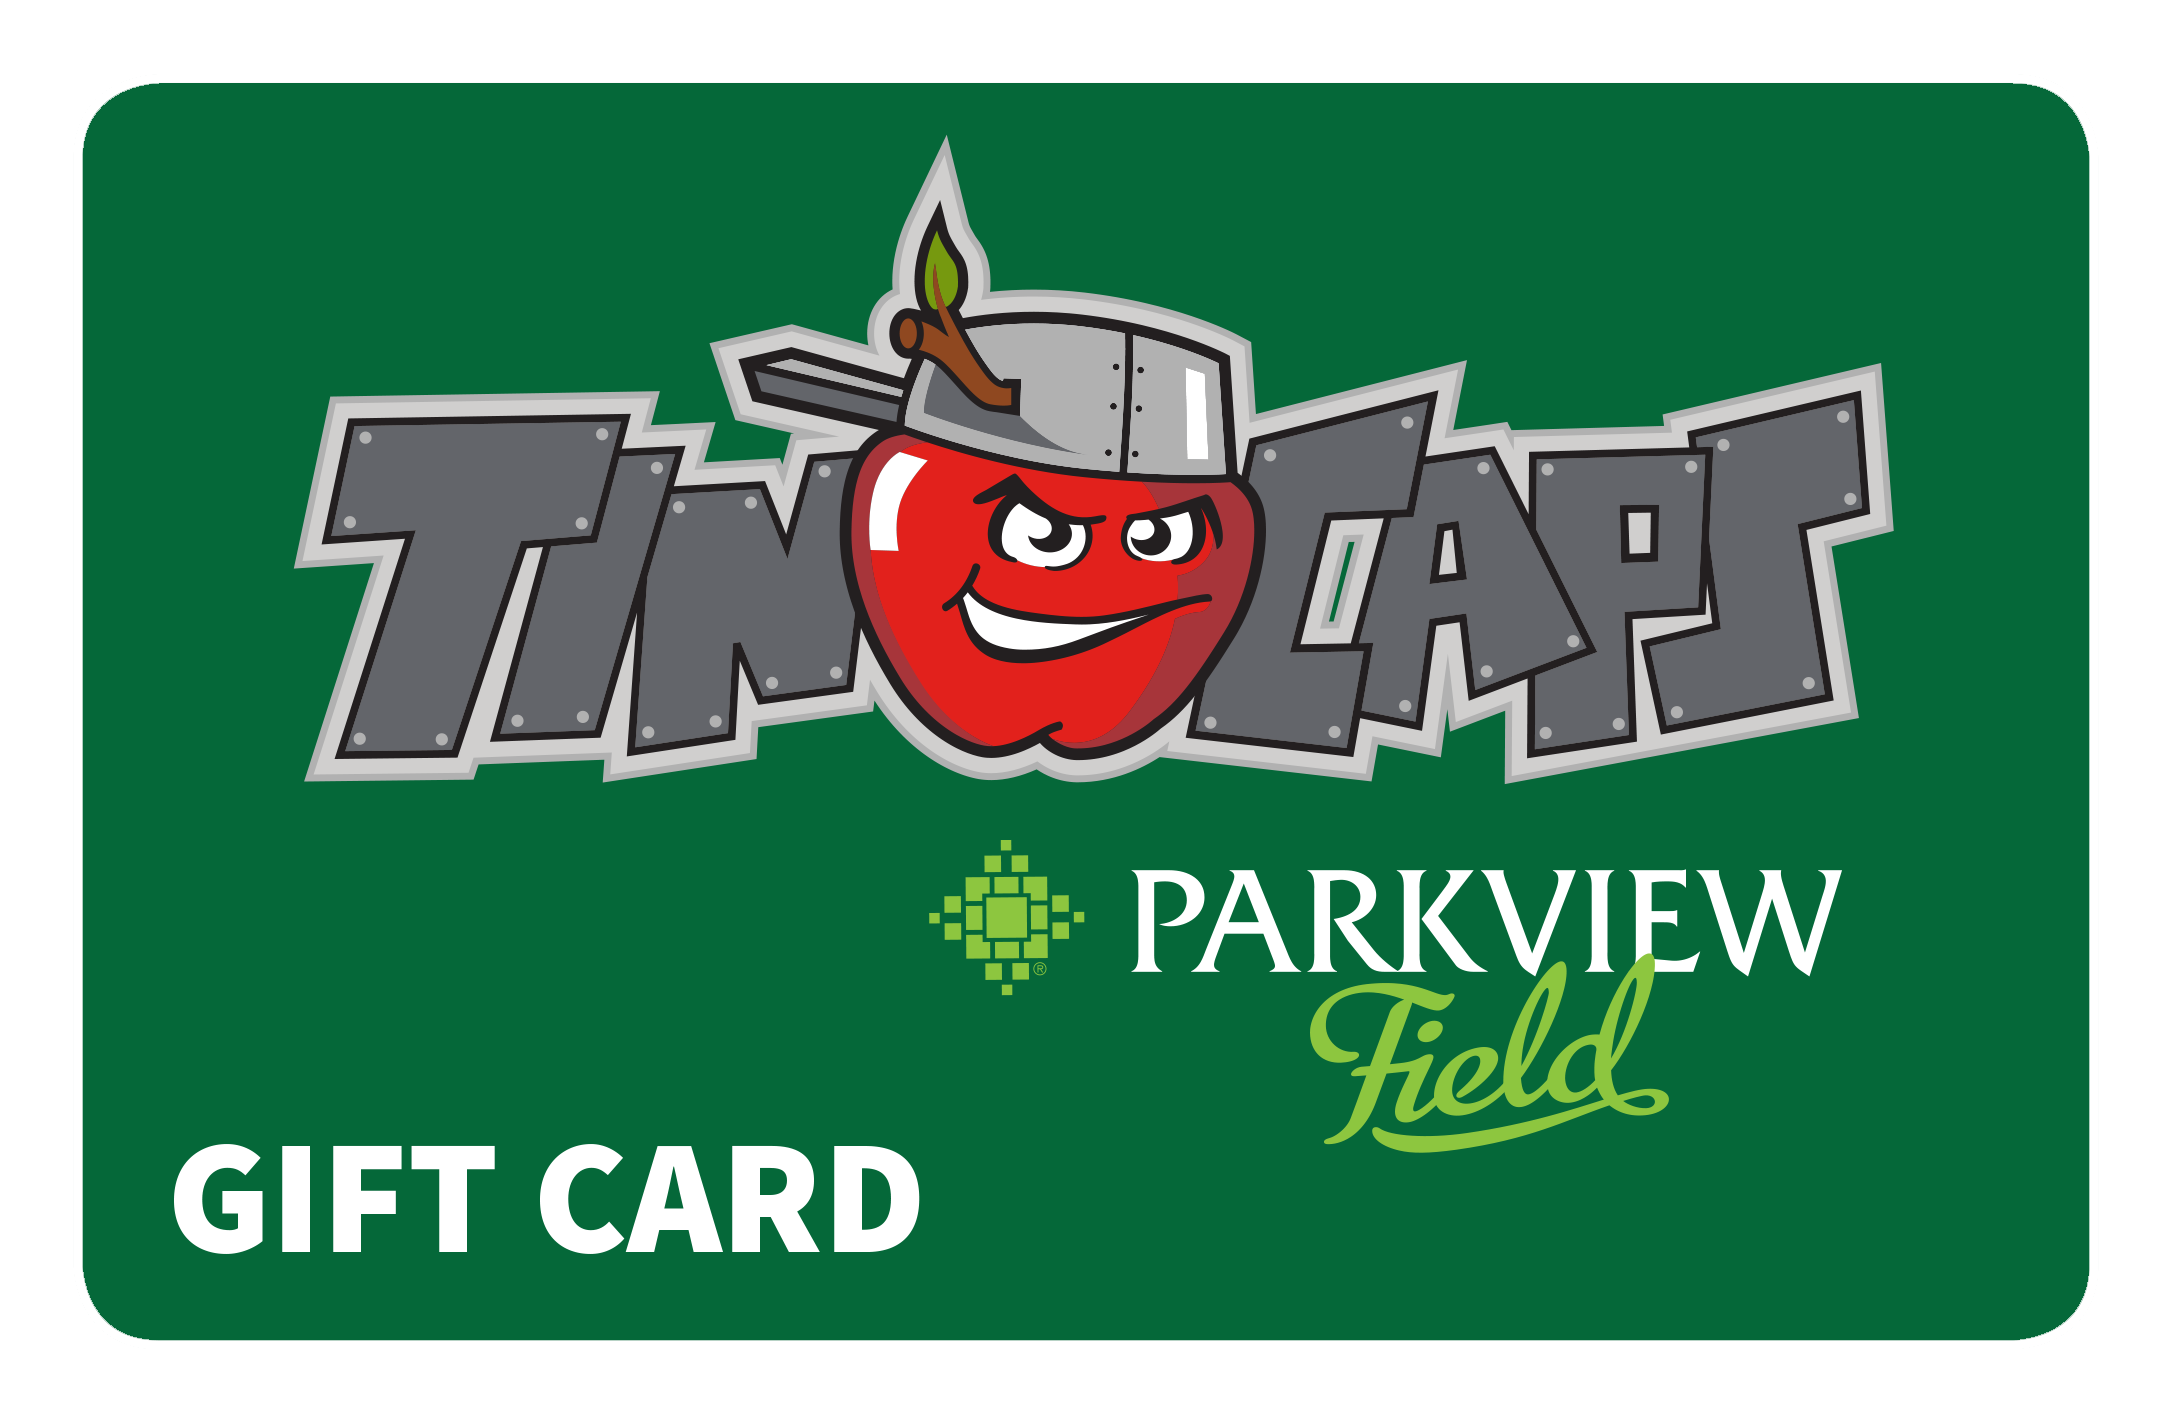 Fort Wayne TinCaps Gift Card 